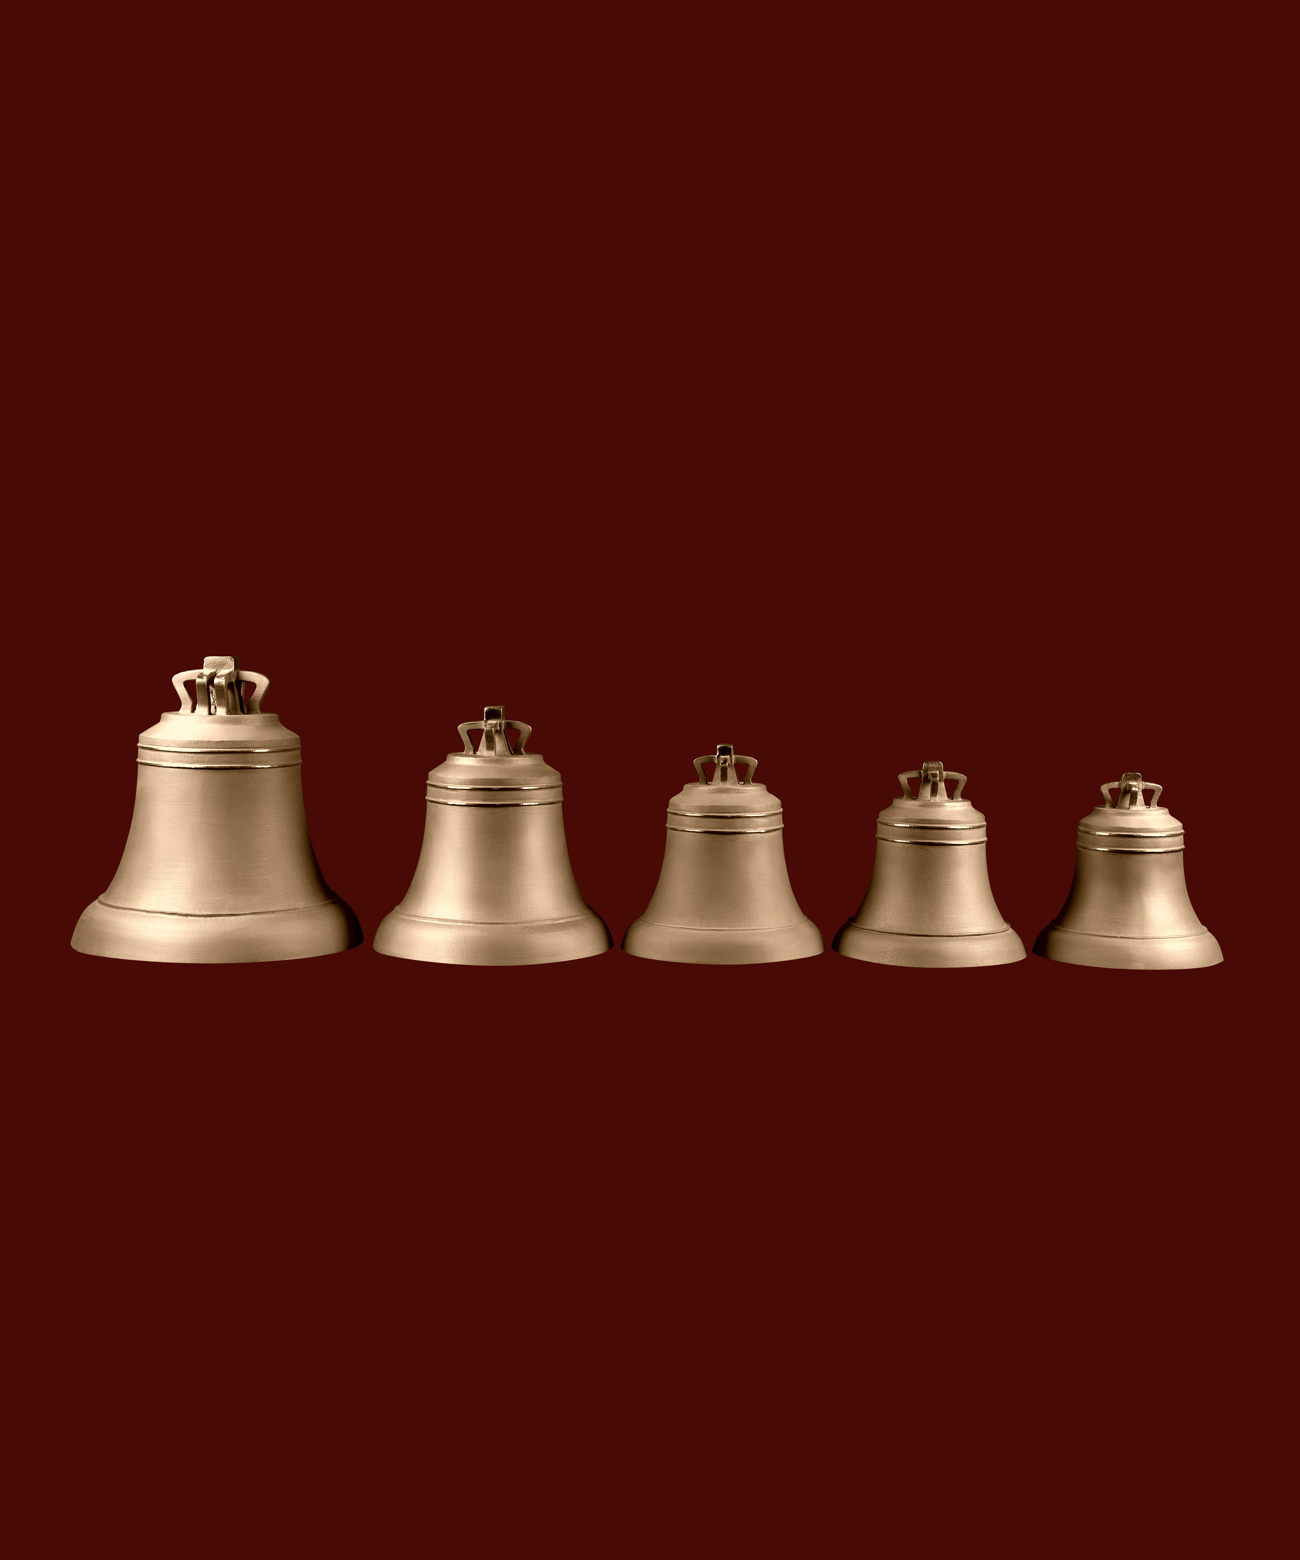 фото Набор №4 из 5-ти "Монастырских" колоколов весом 20,14,8,6,5 кг в каталоге завода Литэкс